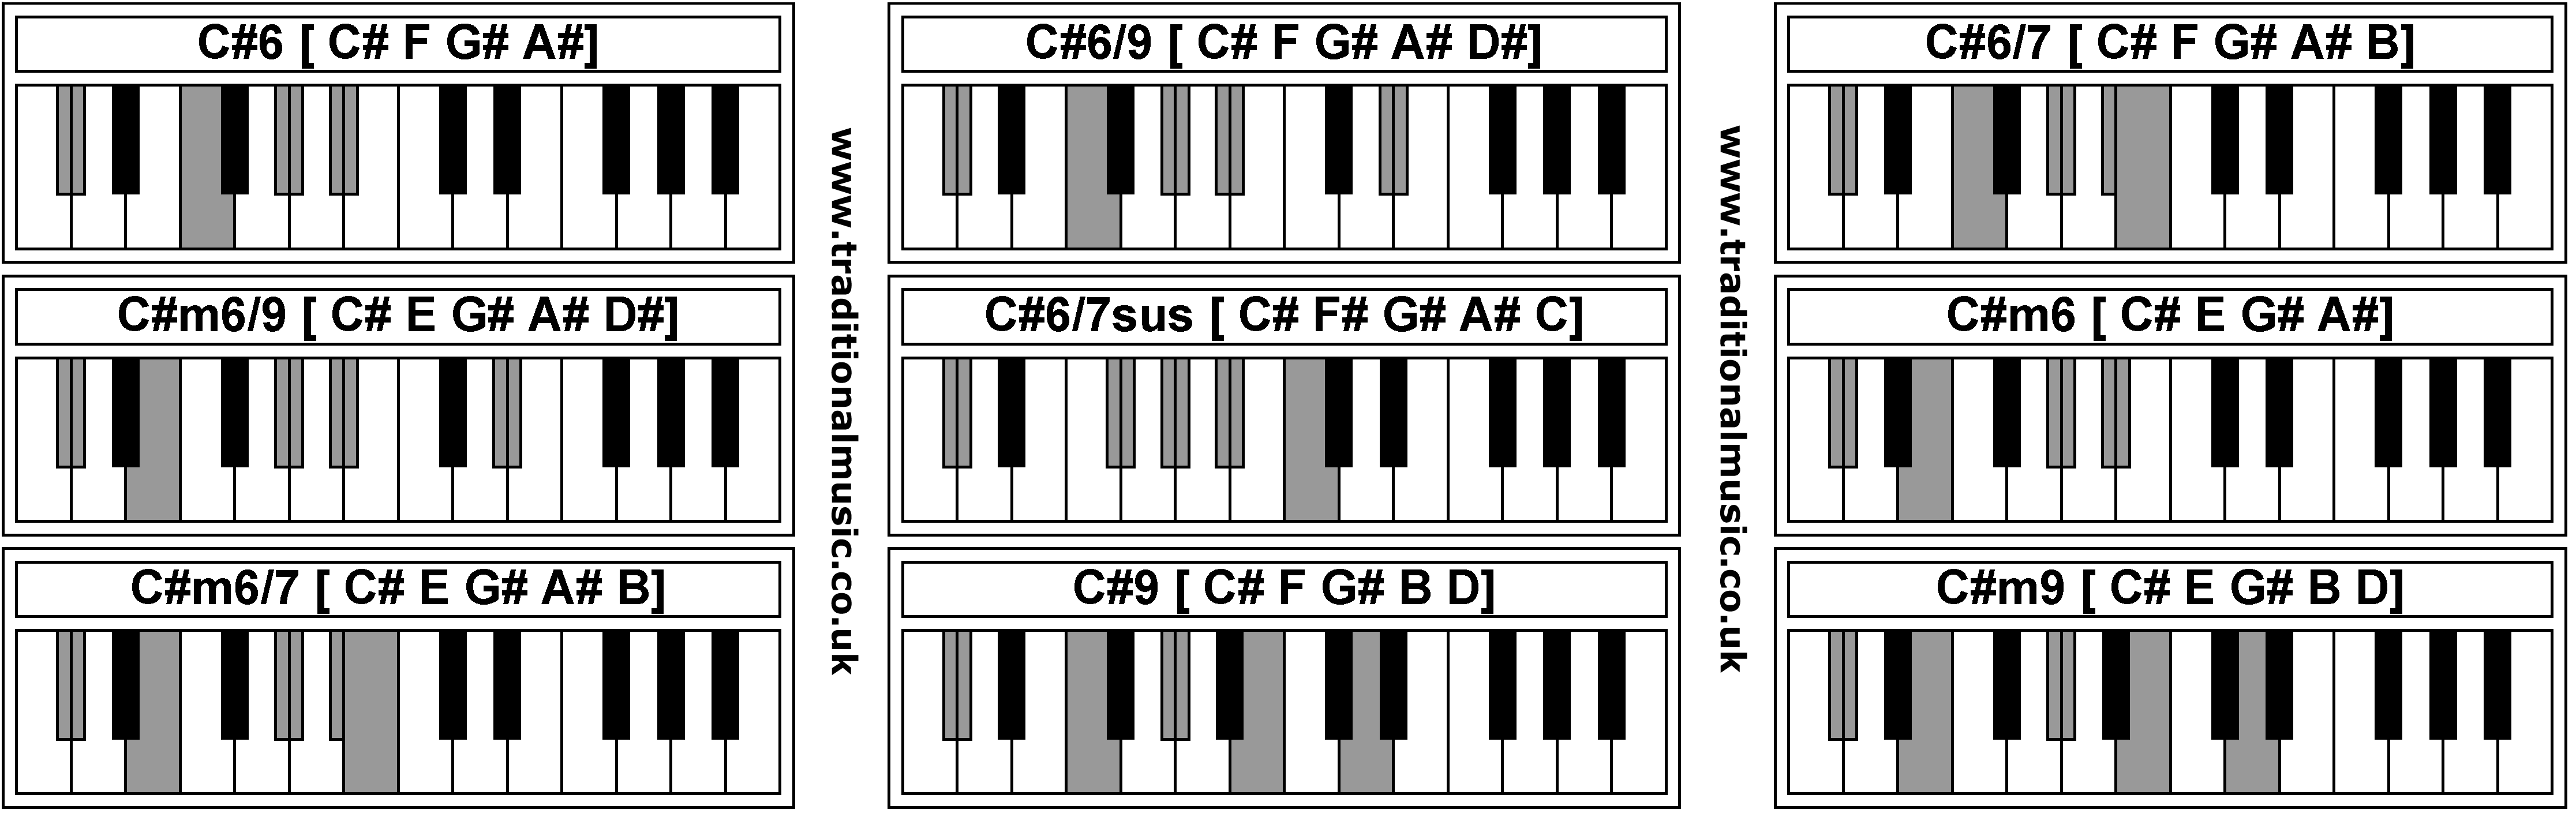 Piano Chords - C#6  C#6/9  C#6/7  C#m6/9  C#6/7sus  C#m6  C#m6/7  C#9  C#m9 